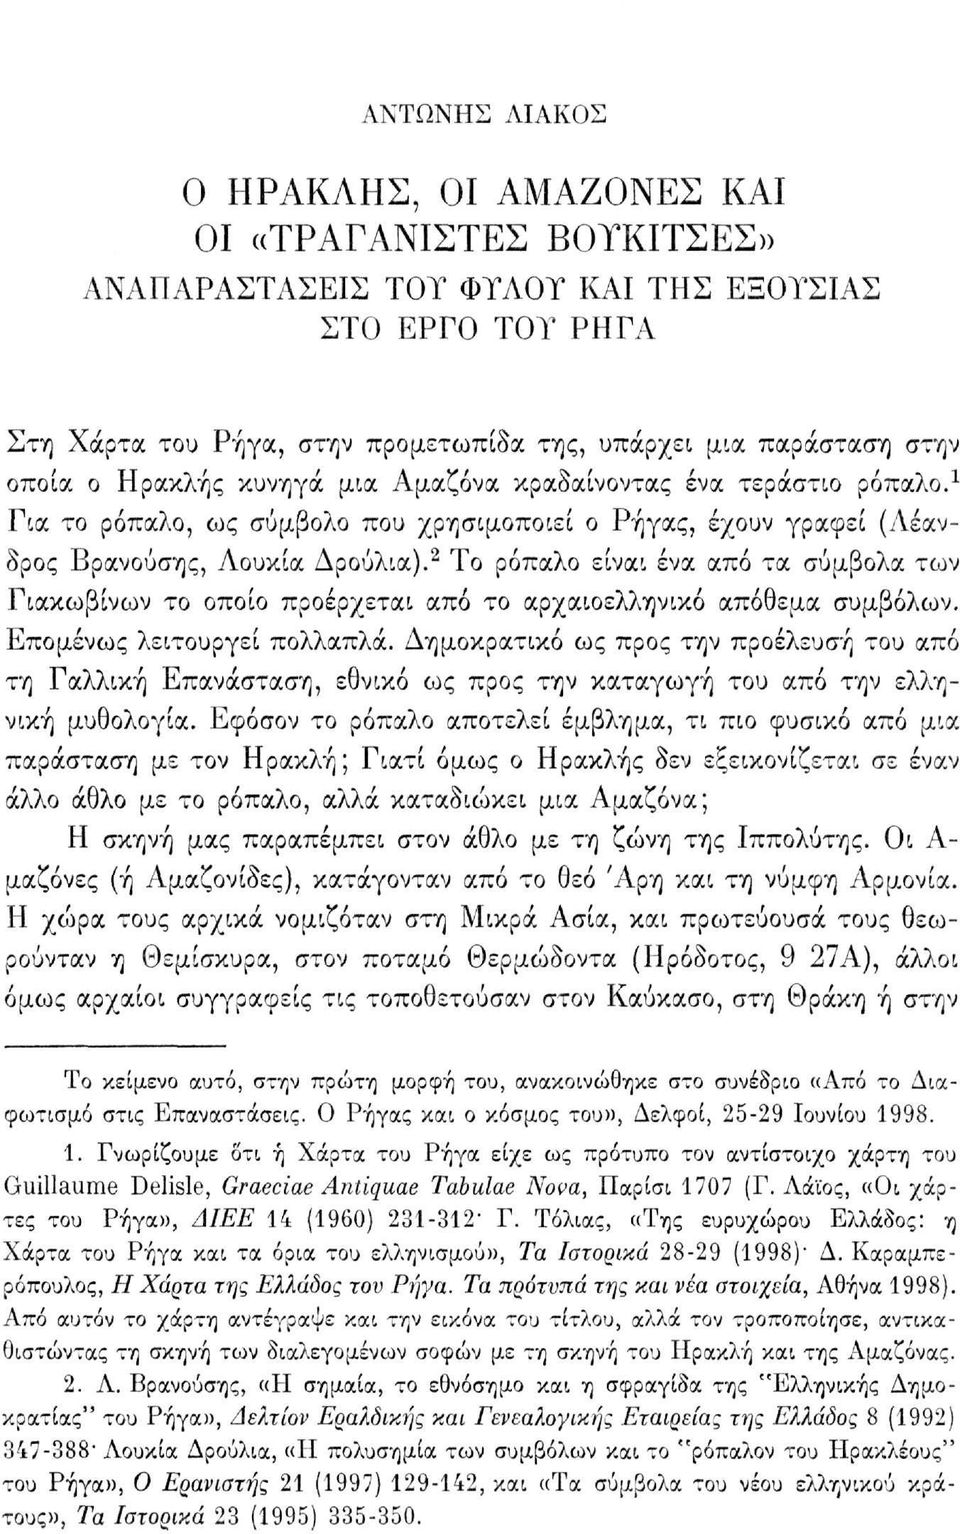 2 Το ρόπαλο είναι ένα από τα σύμβολα των Γιακωβίνων το οποίο προέρχεται από το αρχαιοελληνικό απόθεμα συμβόλων. Επομένως λειτουργεί πολλαπλά.